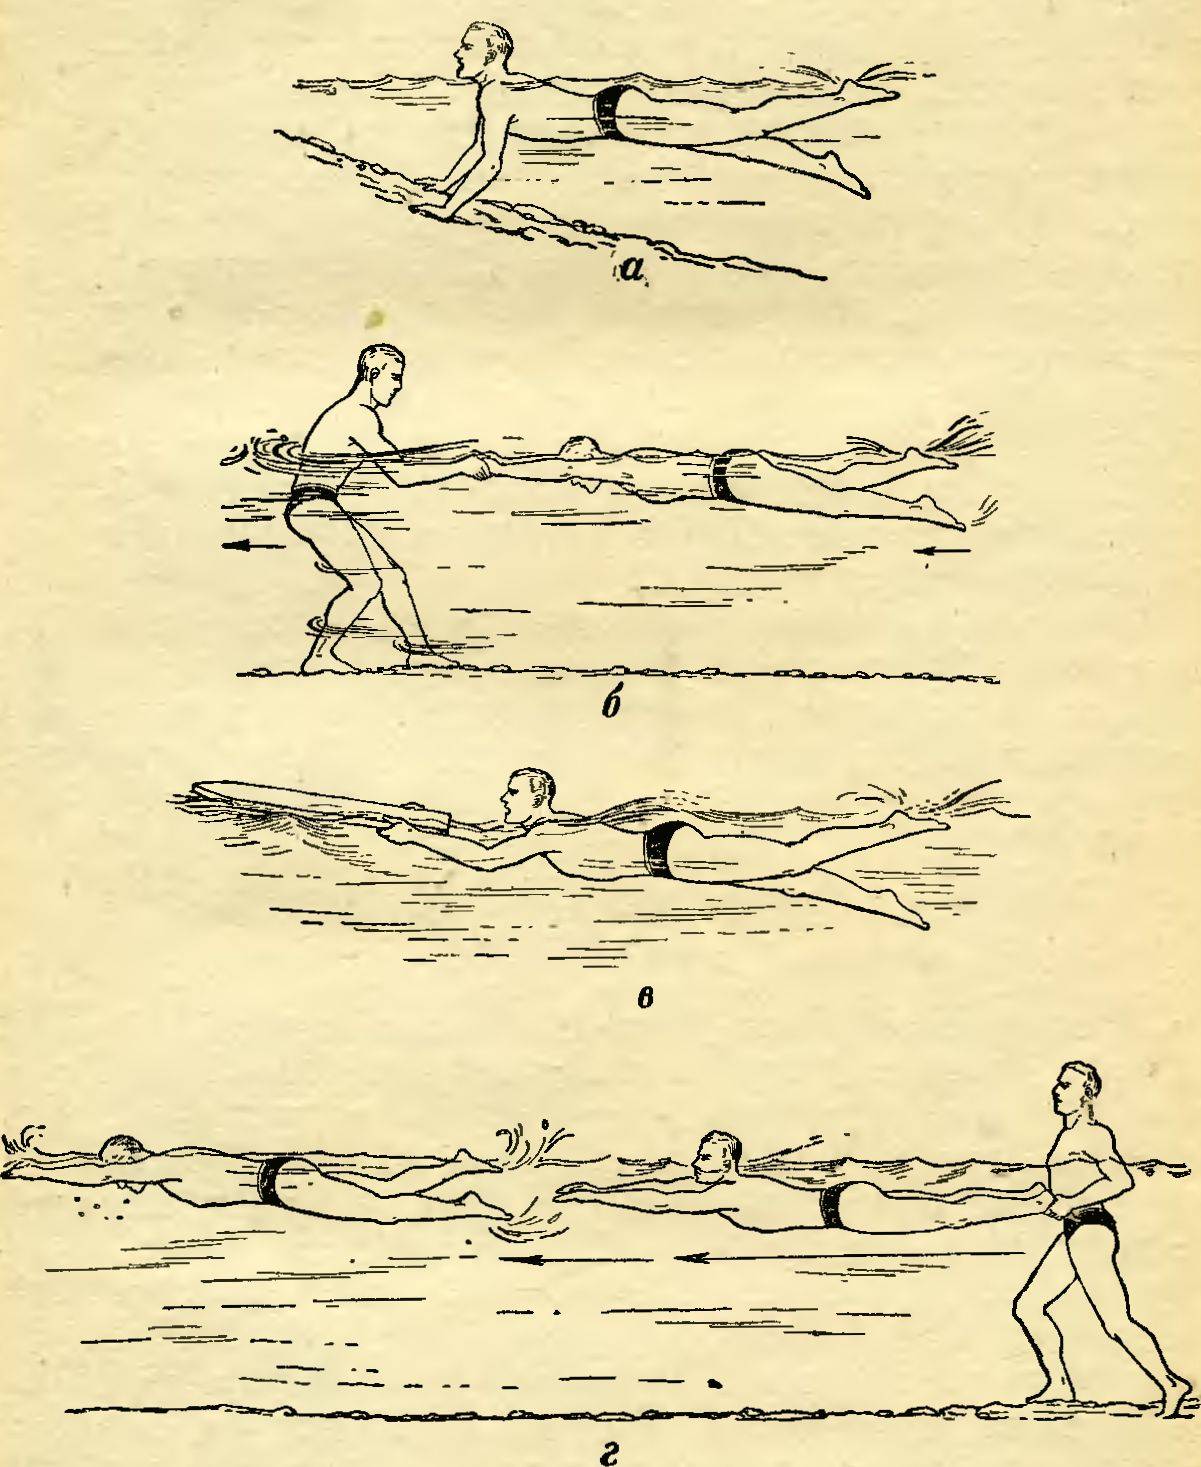 Сухое плавание: упражнения для пловцов на суше, тренировки и офп в зале и дома для спины и рук с эспандером и на тренажерах, растяжка